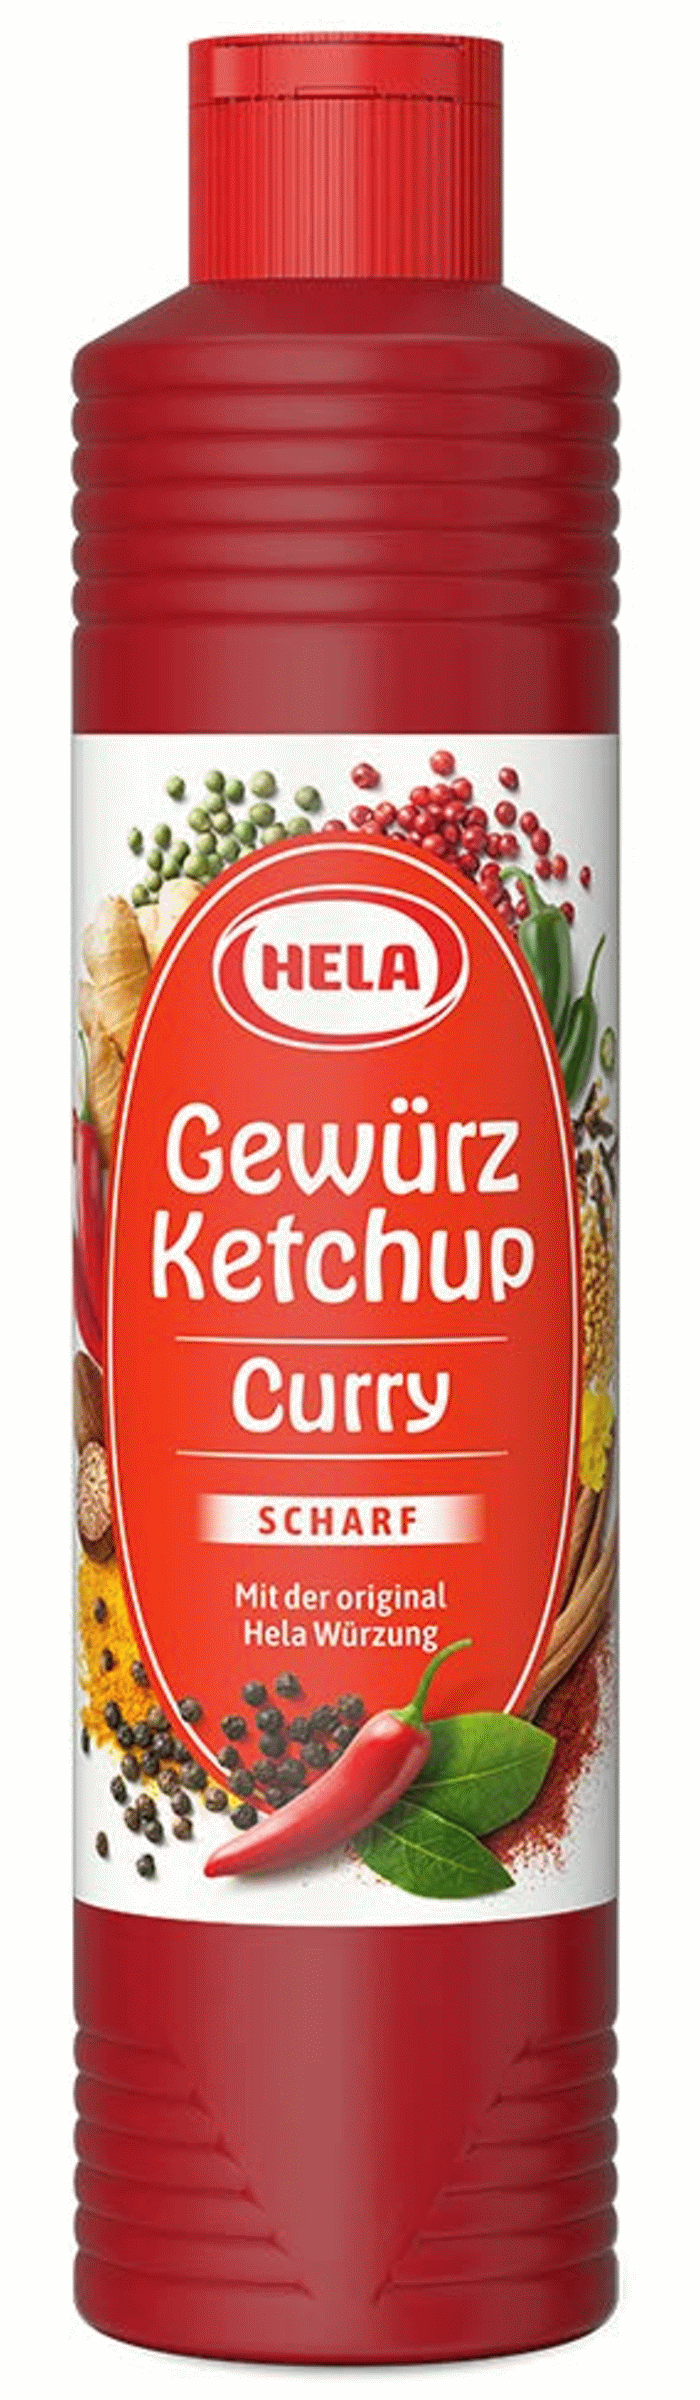 Hela Curry Gewürz Ketchup Scharf 800ml